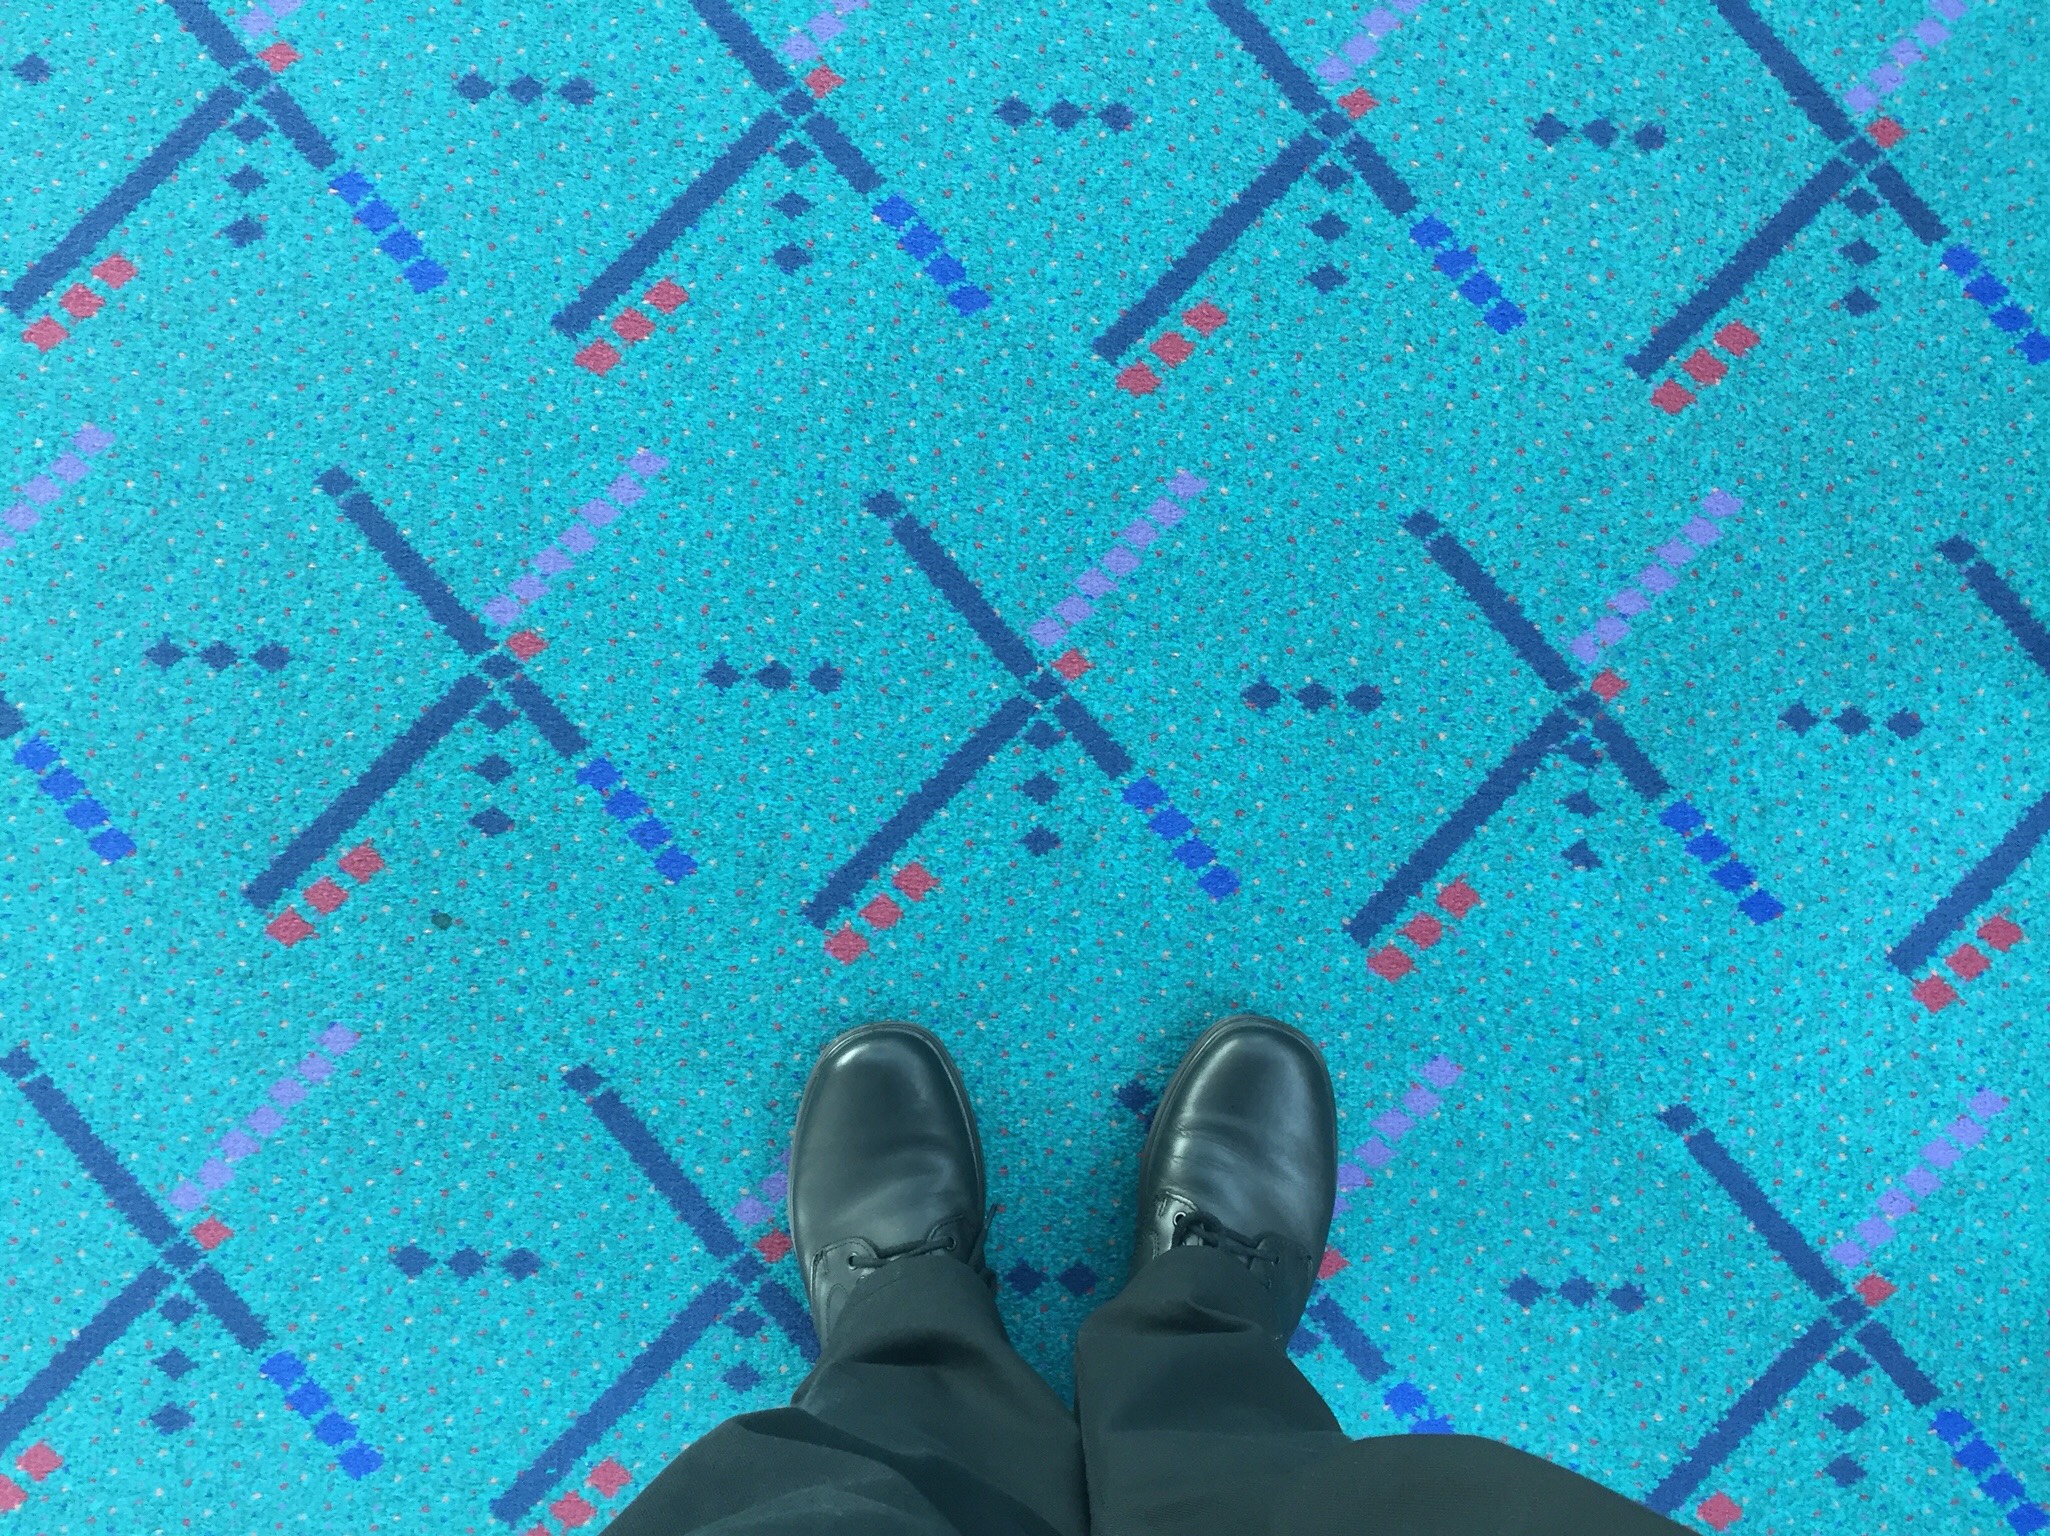 Portland Airport - PDX's original carpet design